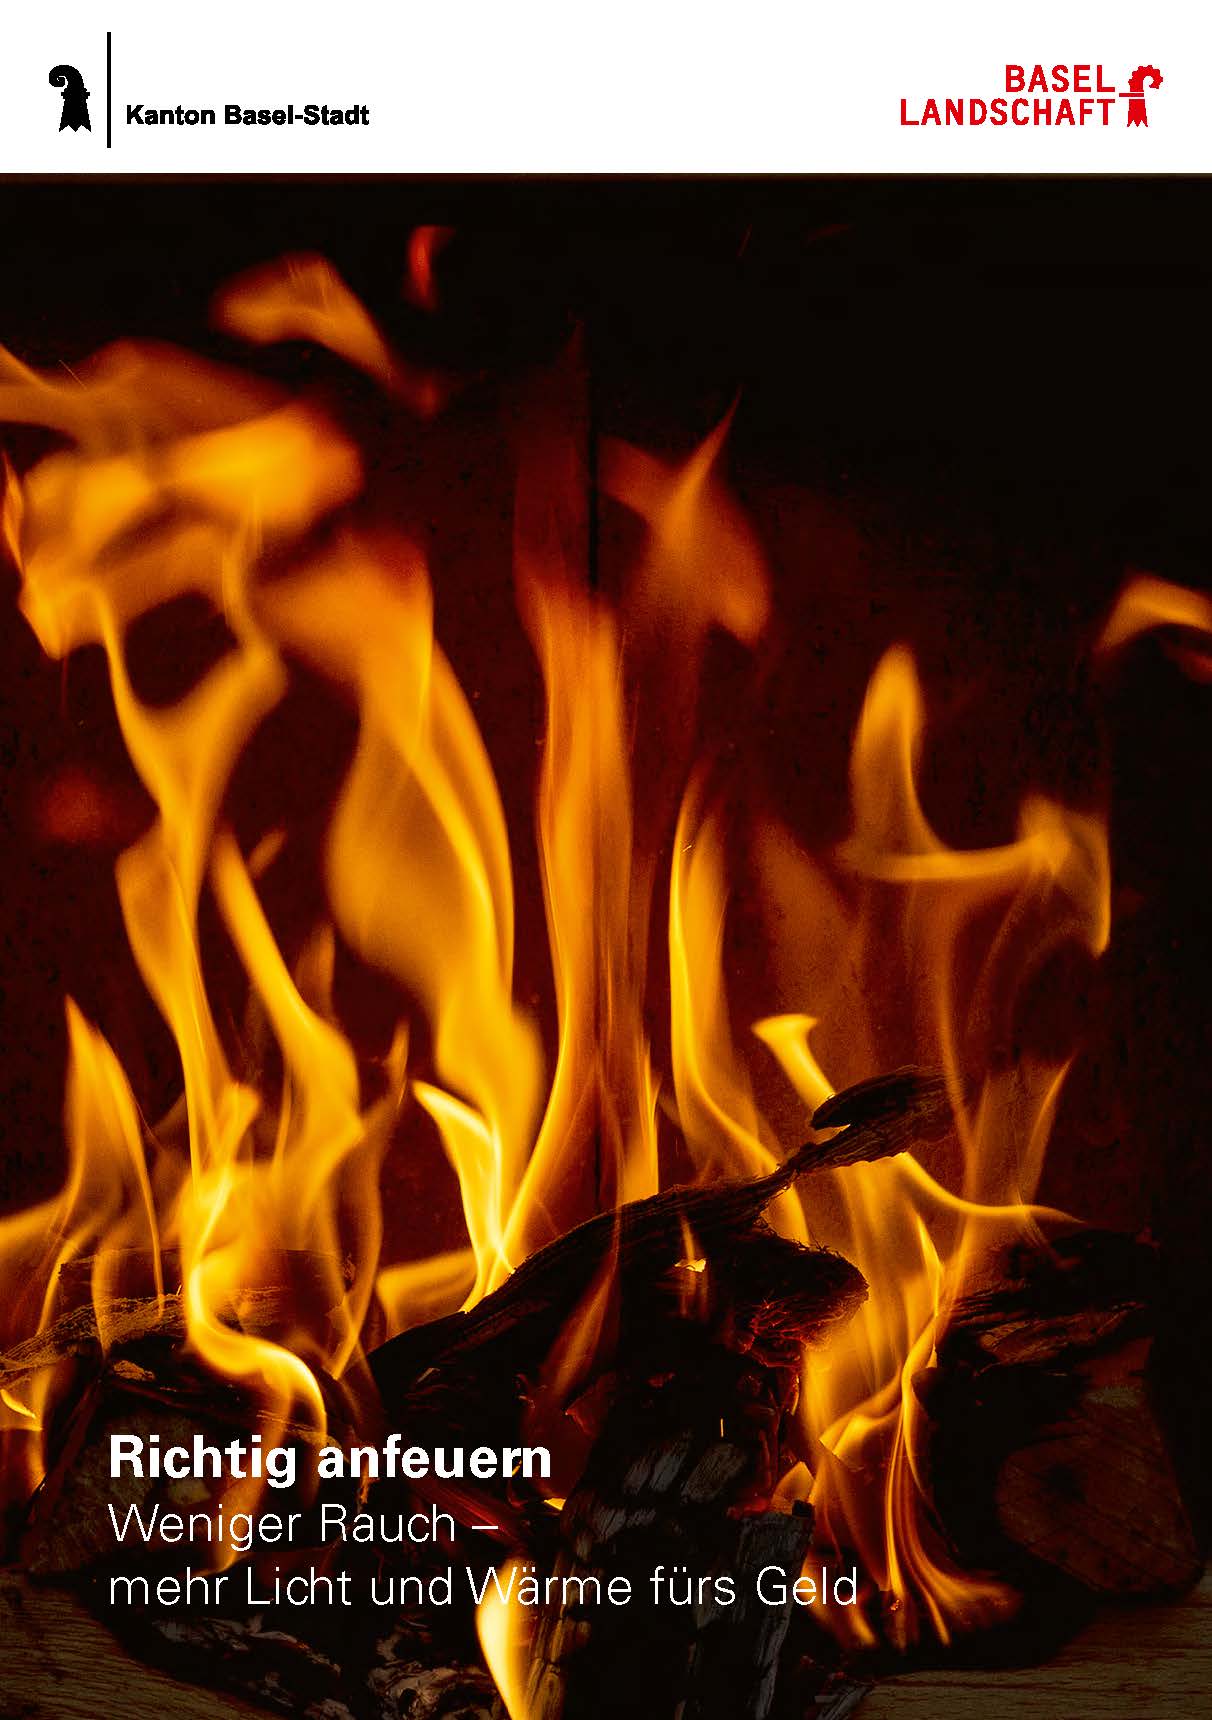 Titelbild des Flyers mit Feuer